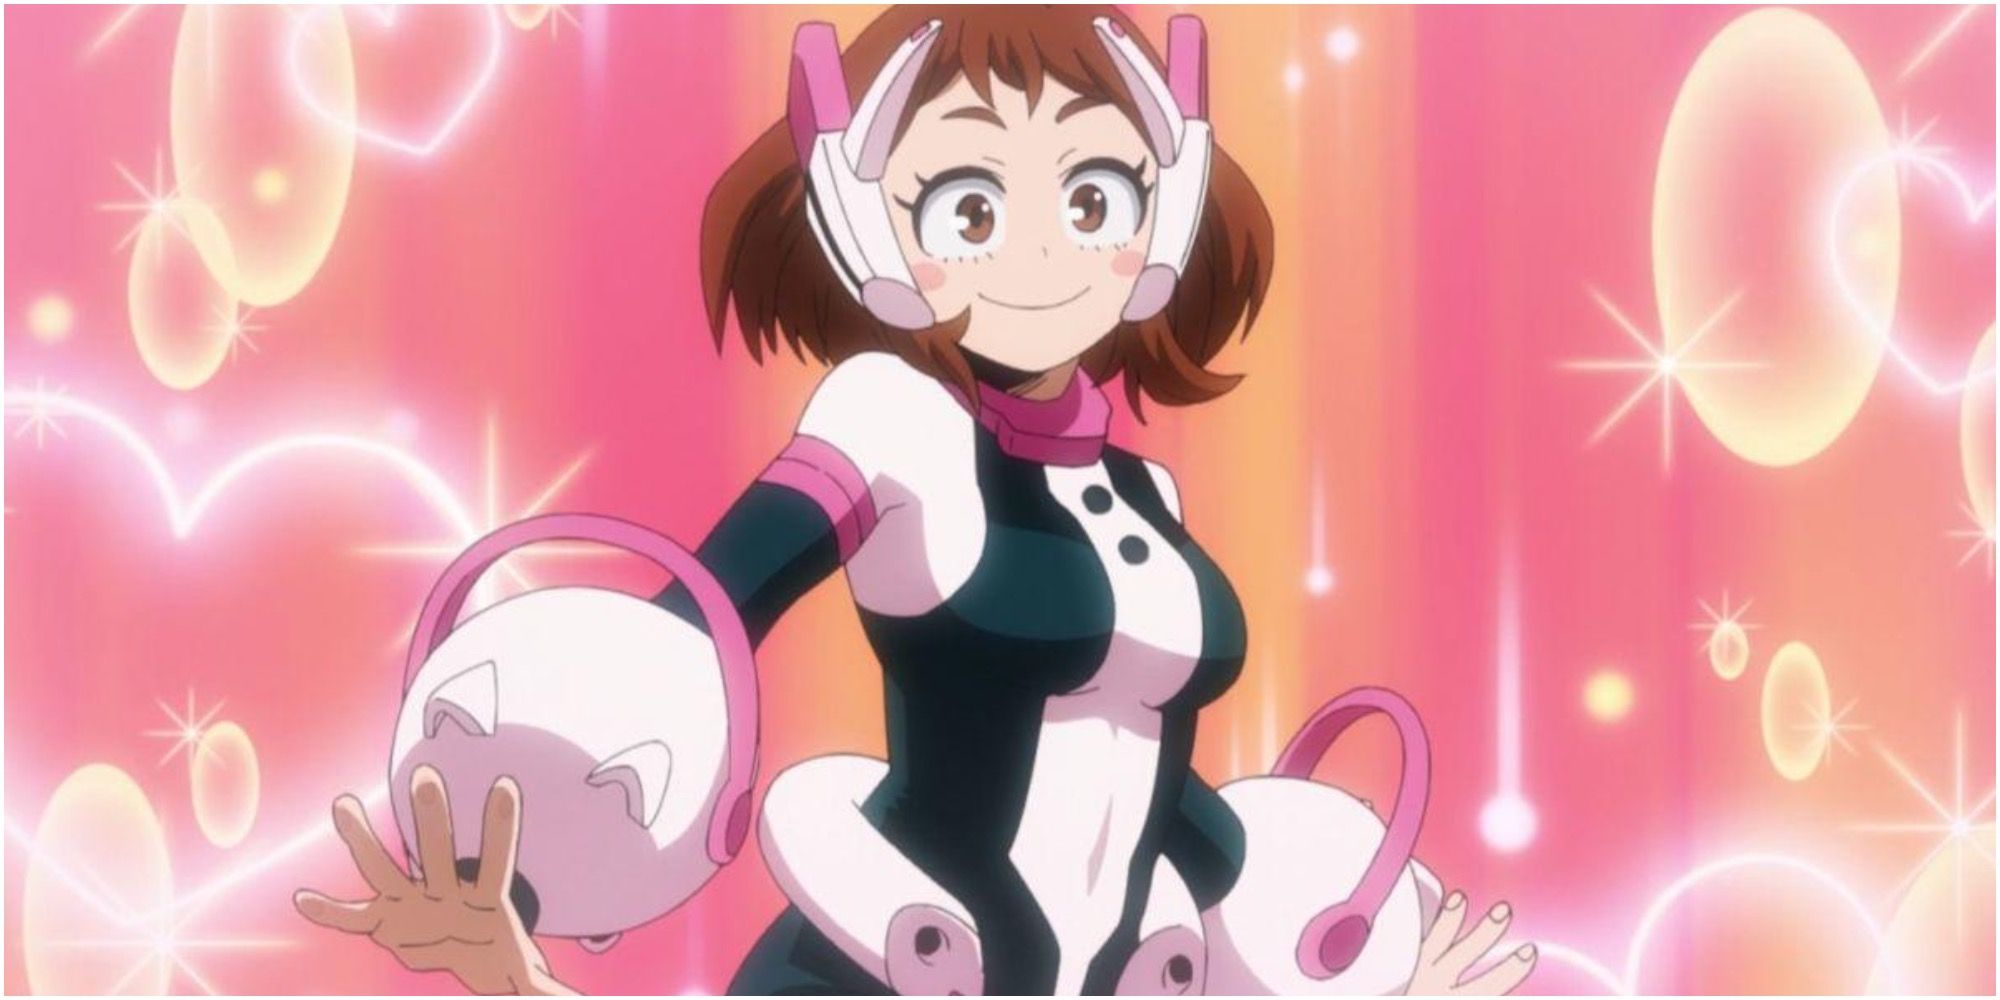 Ochako Uraraka from My Hero Academia Brunette Girl Anime Superpowers